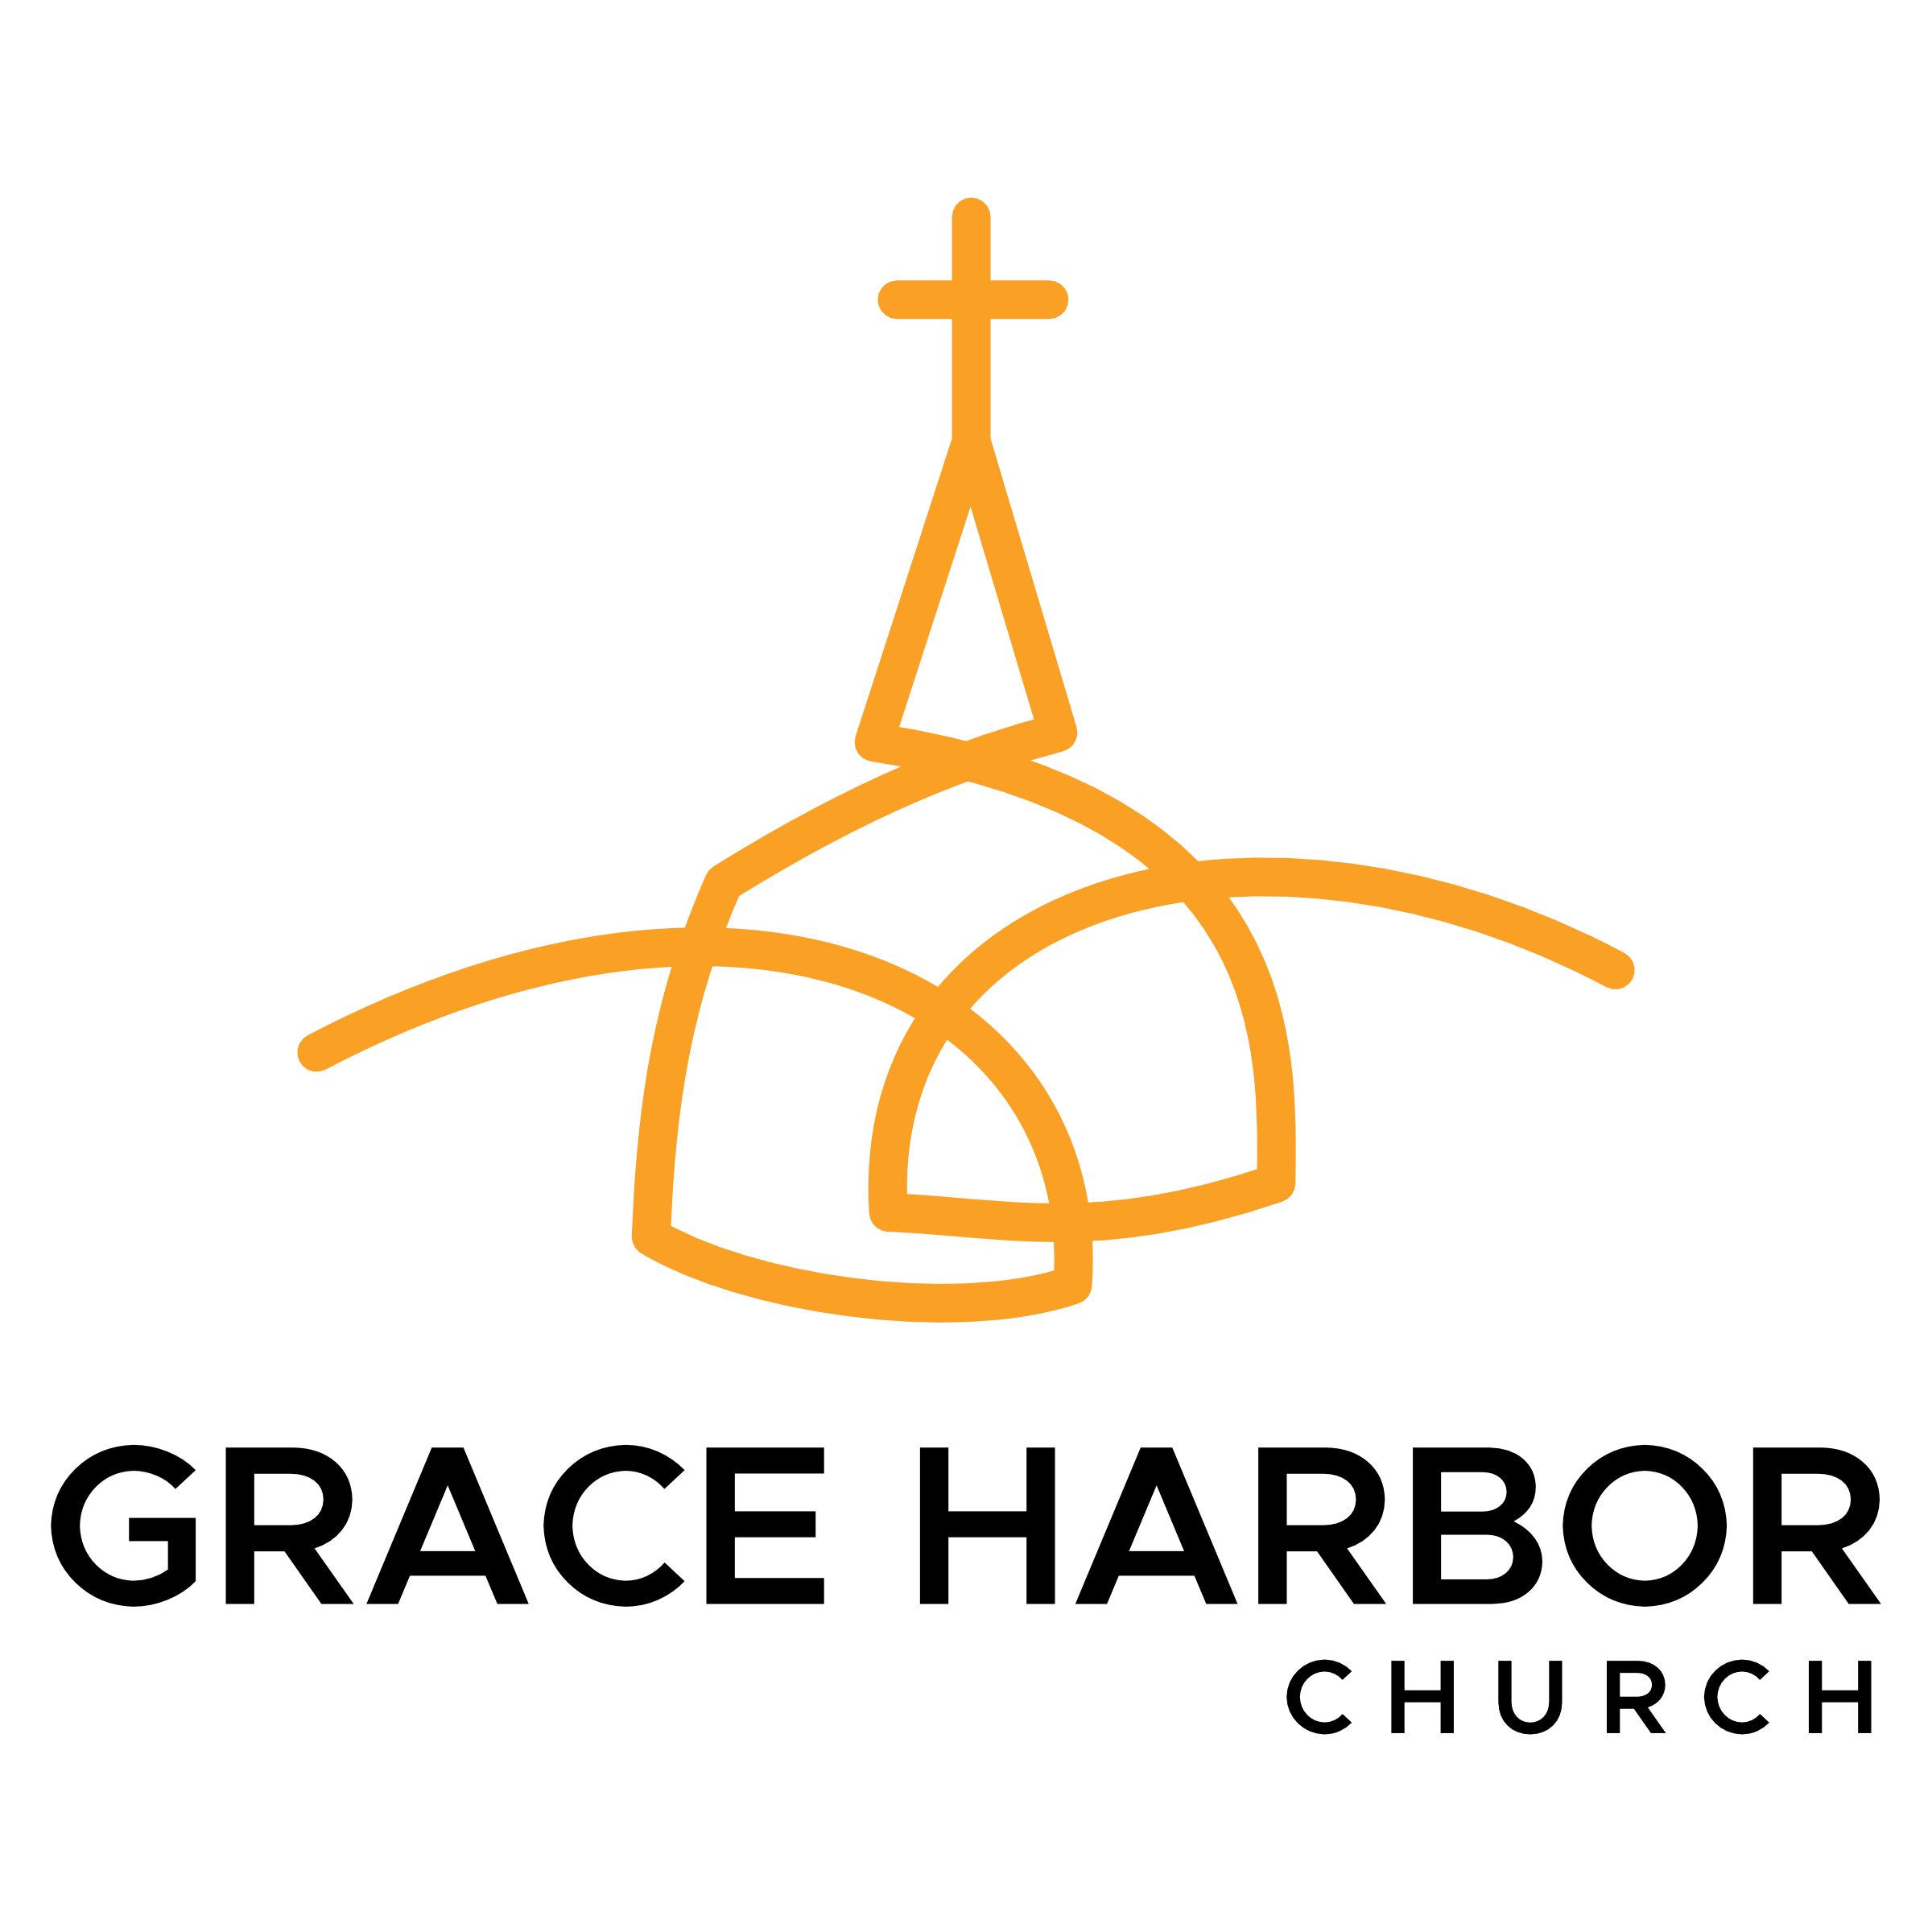 Grace Harbor Church Sermons